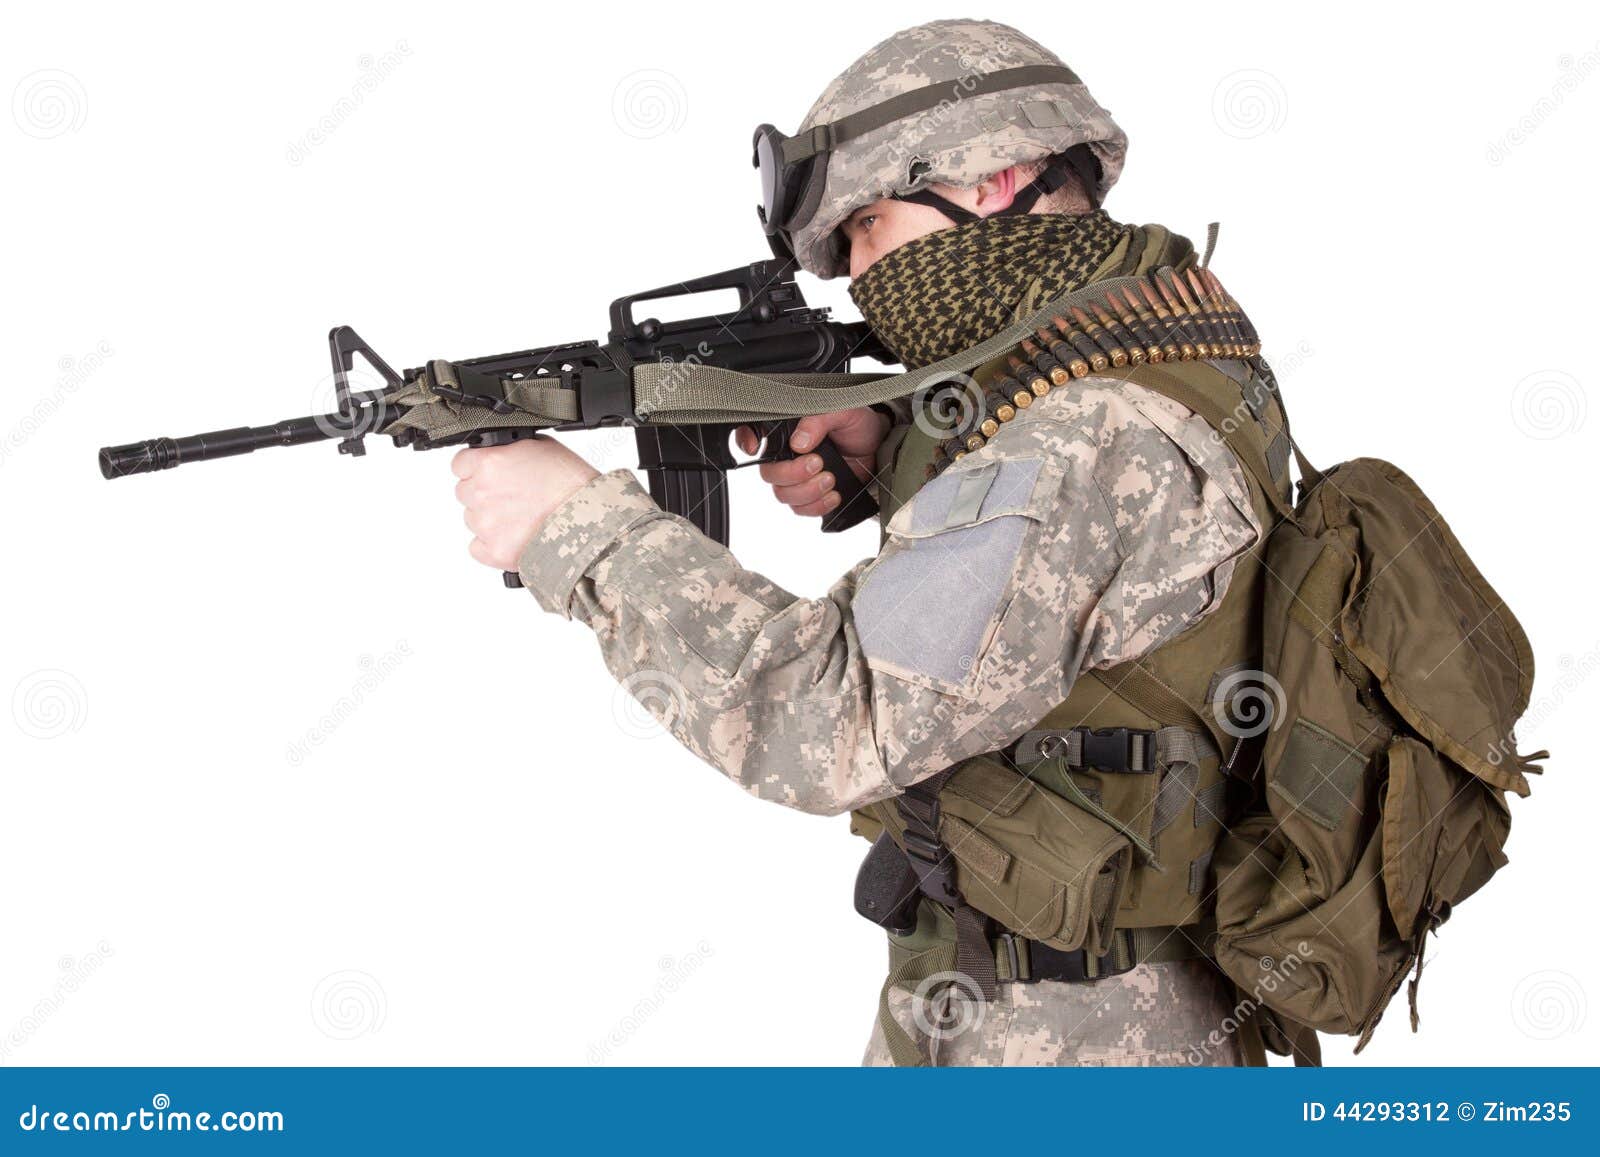 us-soldier-hand-gun-white-background-44293312.jpg